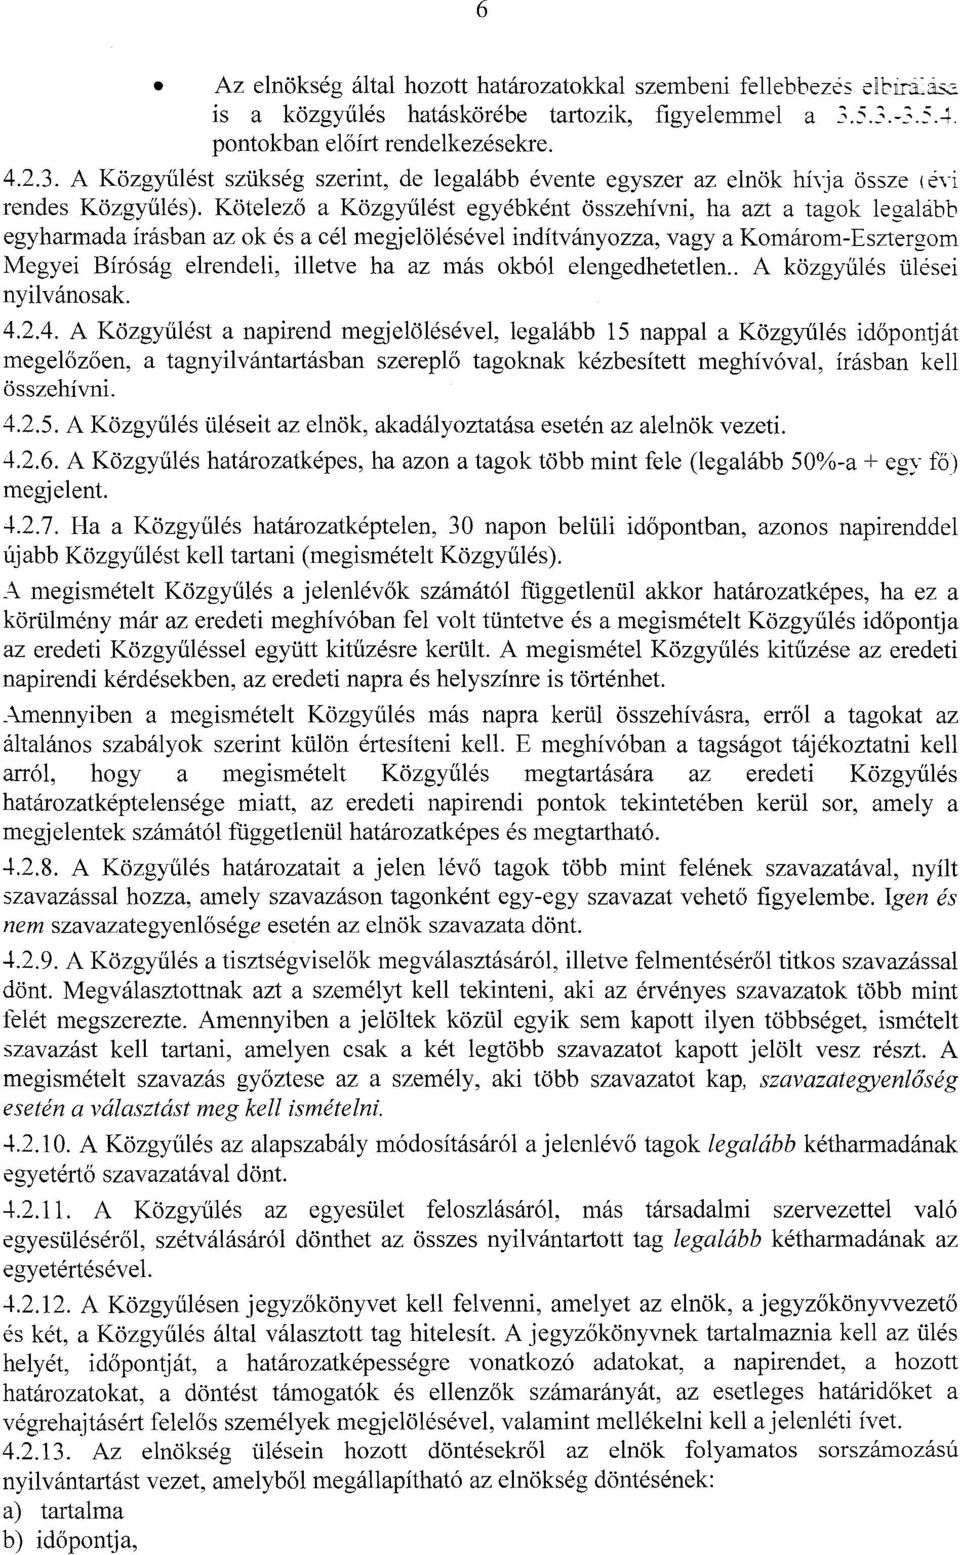 Kotelezo a Kozgyulest egyebkent osszehfvni, ha azt a tagok legalabb egyharmada irasban az ok es a eel megjelolesevel inditvanyozza, vagy a Komarom-Esztergom Megyei Bir6sag elrendeli, illetve ha az